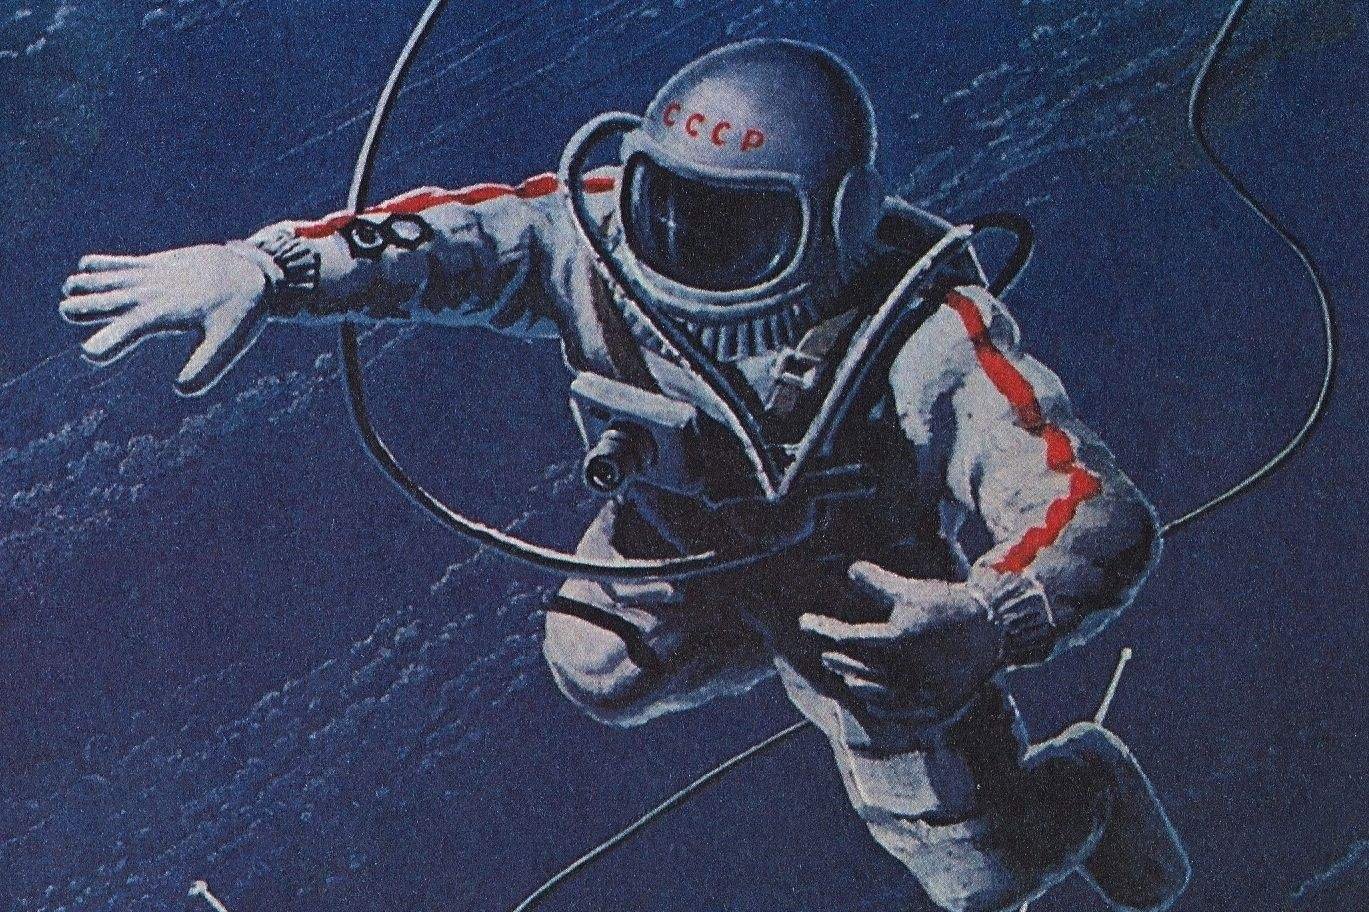 Первый астронавт вышедший в открытый космос. Леонов а. "выхожу в космос". 1979г.